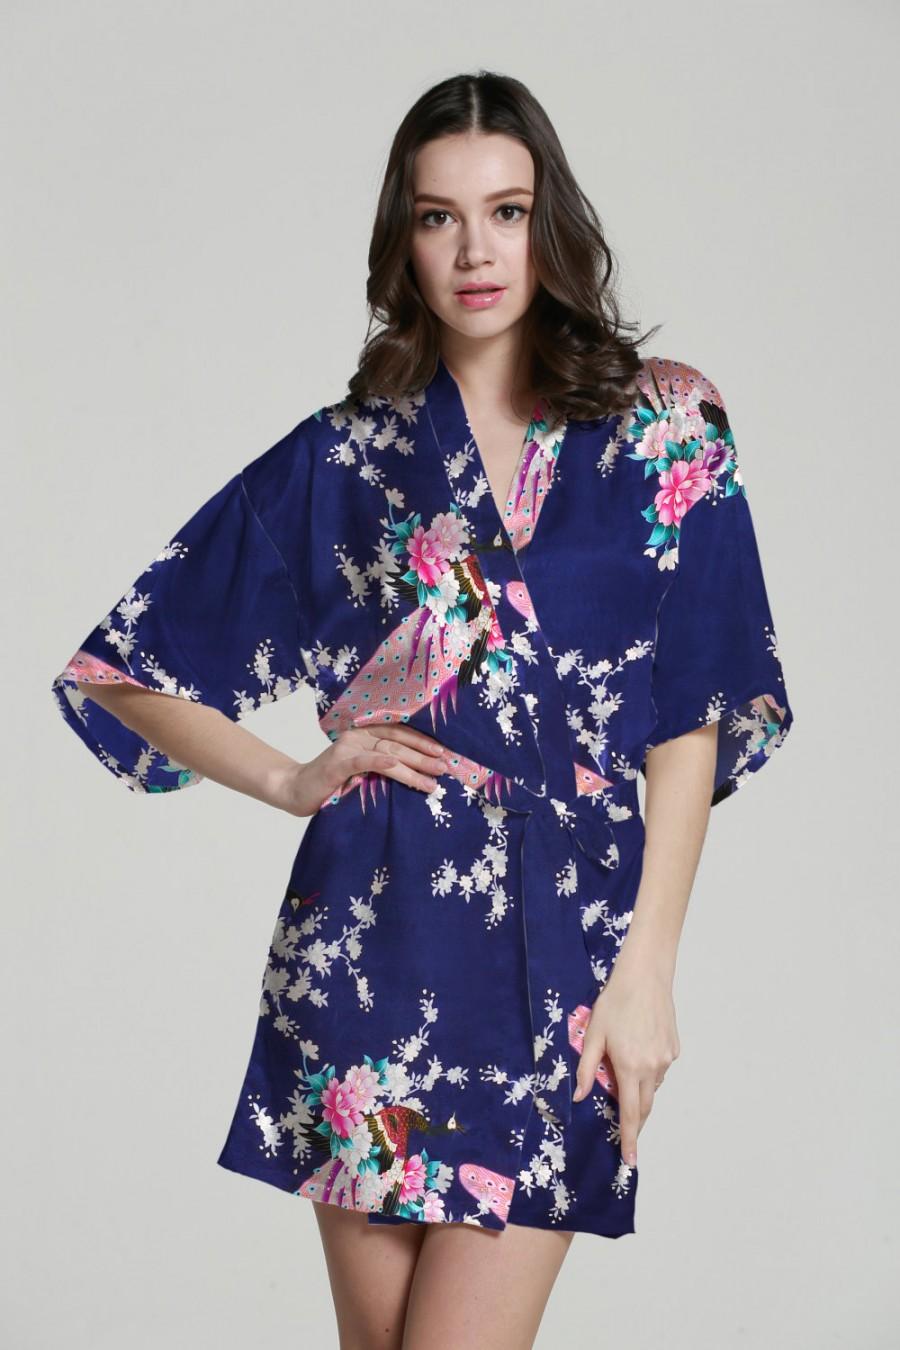 Wedding - Baby kimono robe kimono maxi dress silk kimono dressing gown satin kimono robe japanese kimono bathrobes wedding party gift idea bathrobe